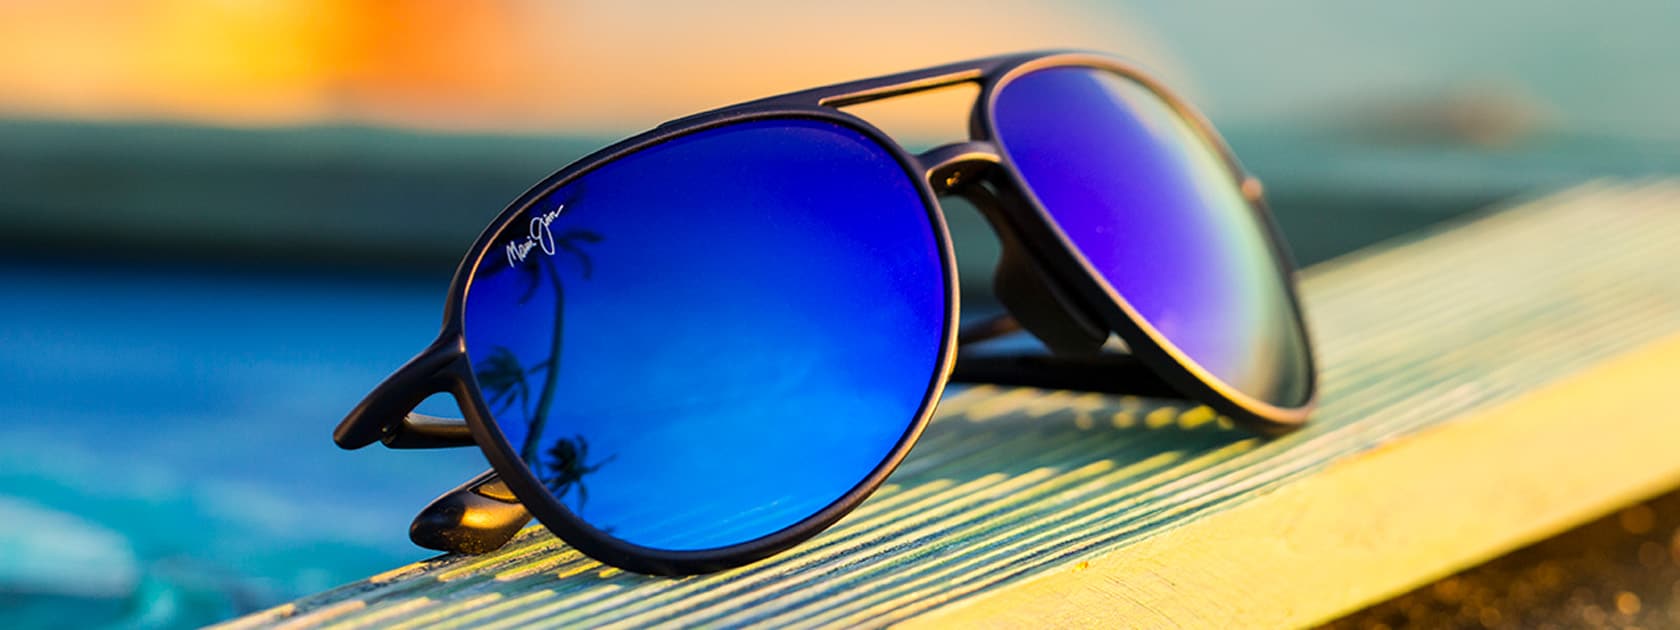 Sonnenbrille mit mattschwarzer Fassung und blauen Gläsern, in denen sich Himmel und Palmen spiegeln, auf Holz